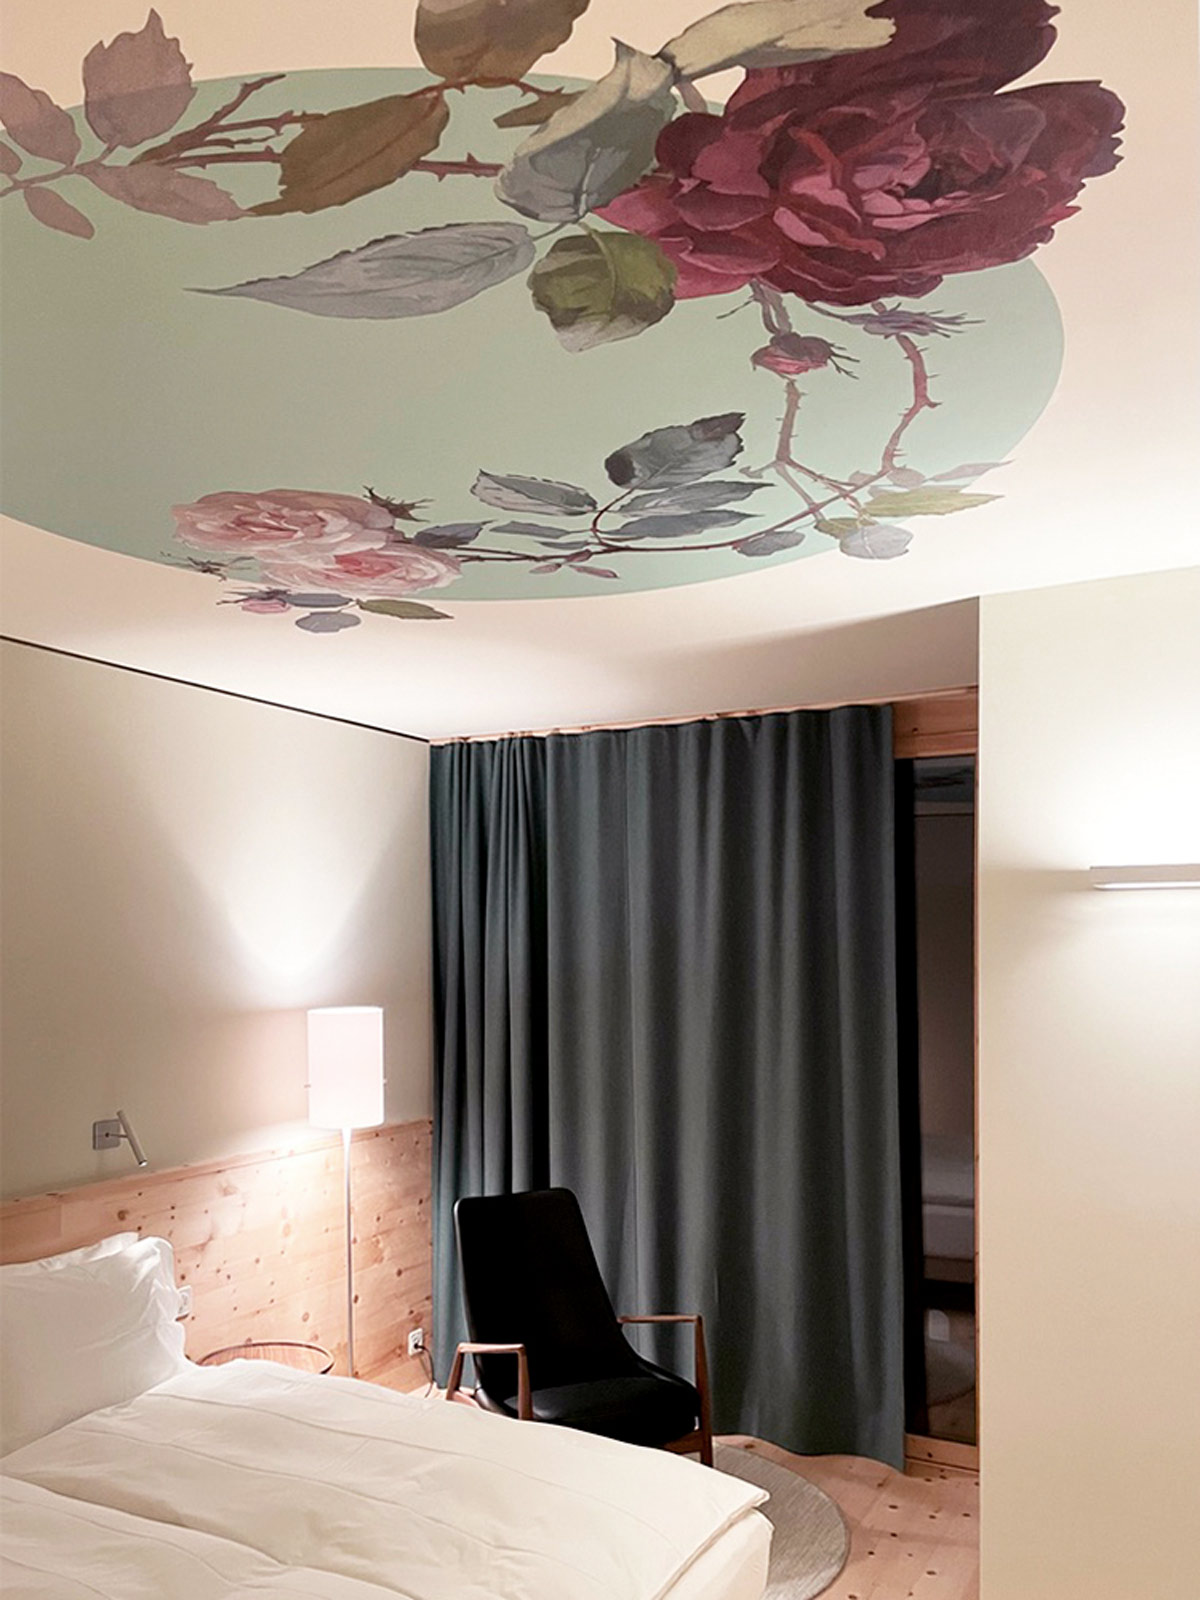 gion-caminada-tapetendesign-hotelinterior-custommadewallcoverings-innenarchitektur